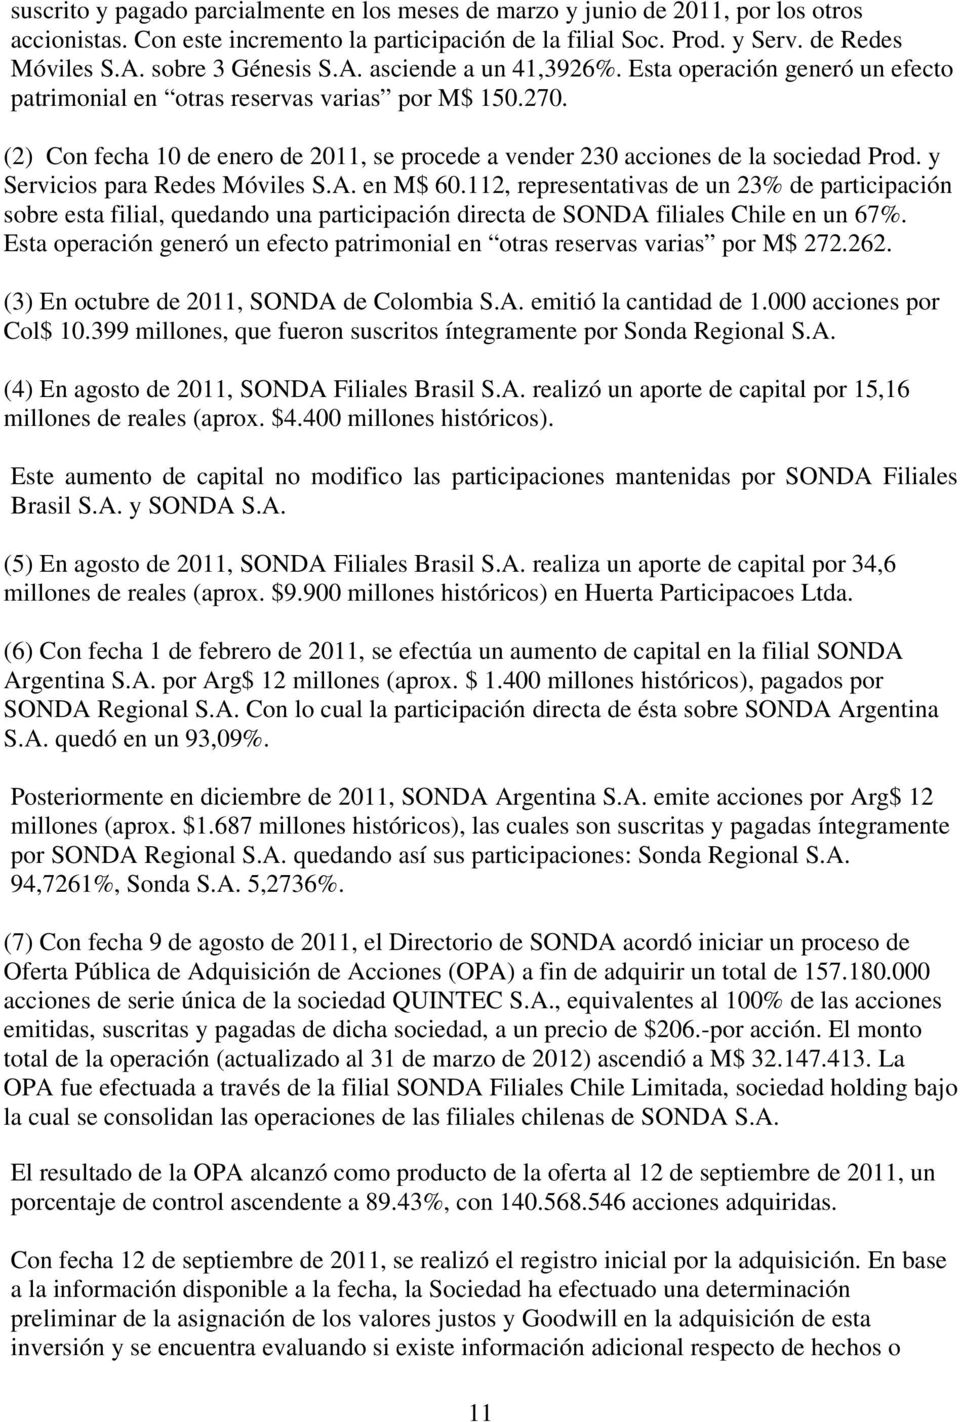 (2) Con fecha 10 de enero de 2011, se procede a vender 230 acciones de la sociedad Prod. y Servicios para Redes Móviles S.A. en M$ 60.